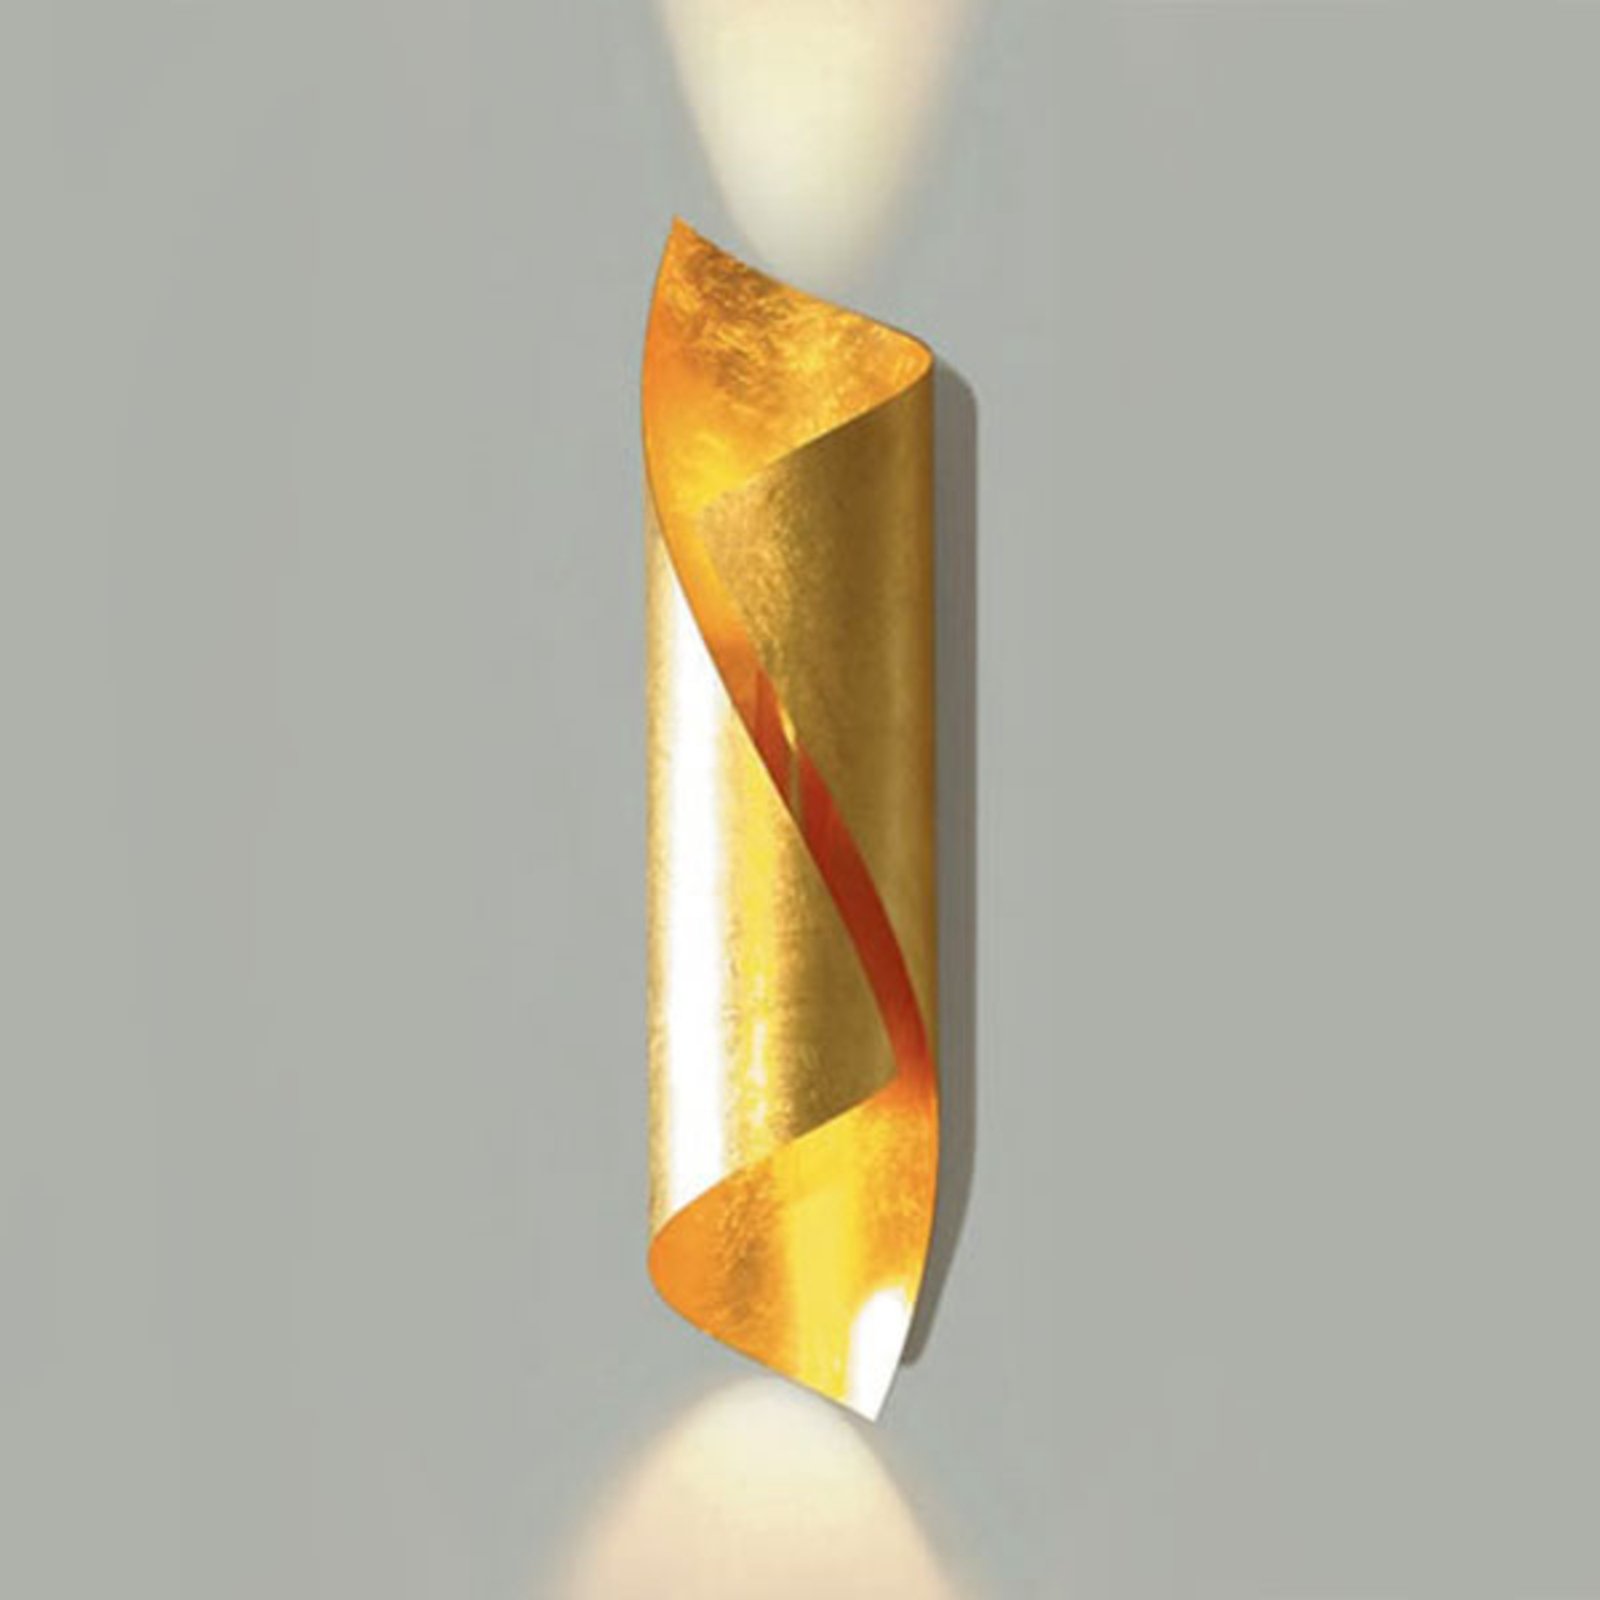 Knikerboker Hué nástenné LED výška 54 cm zlato